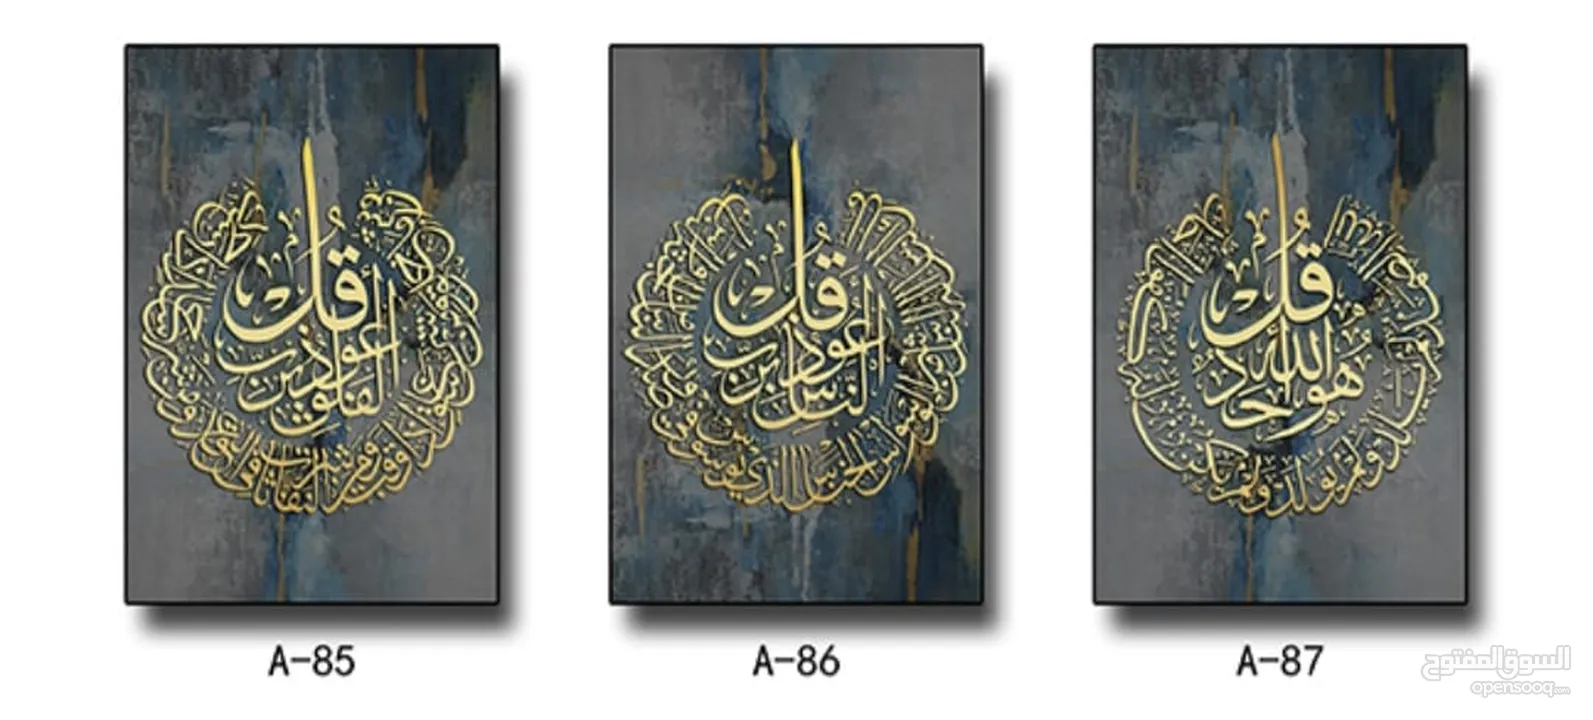 لوحات إسلامية و قرانية باحجام مختلفة